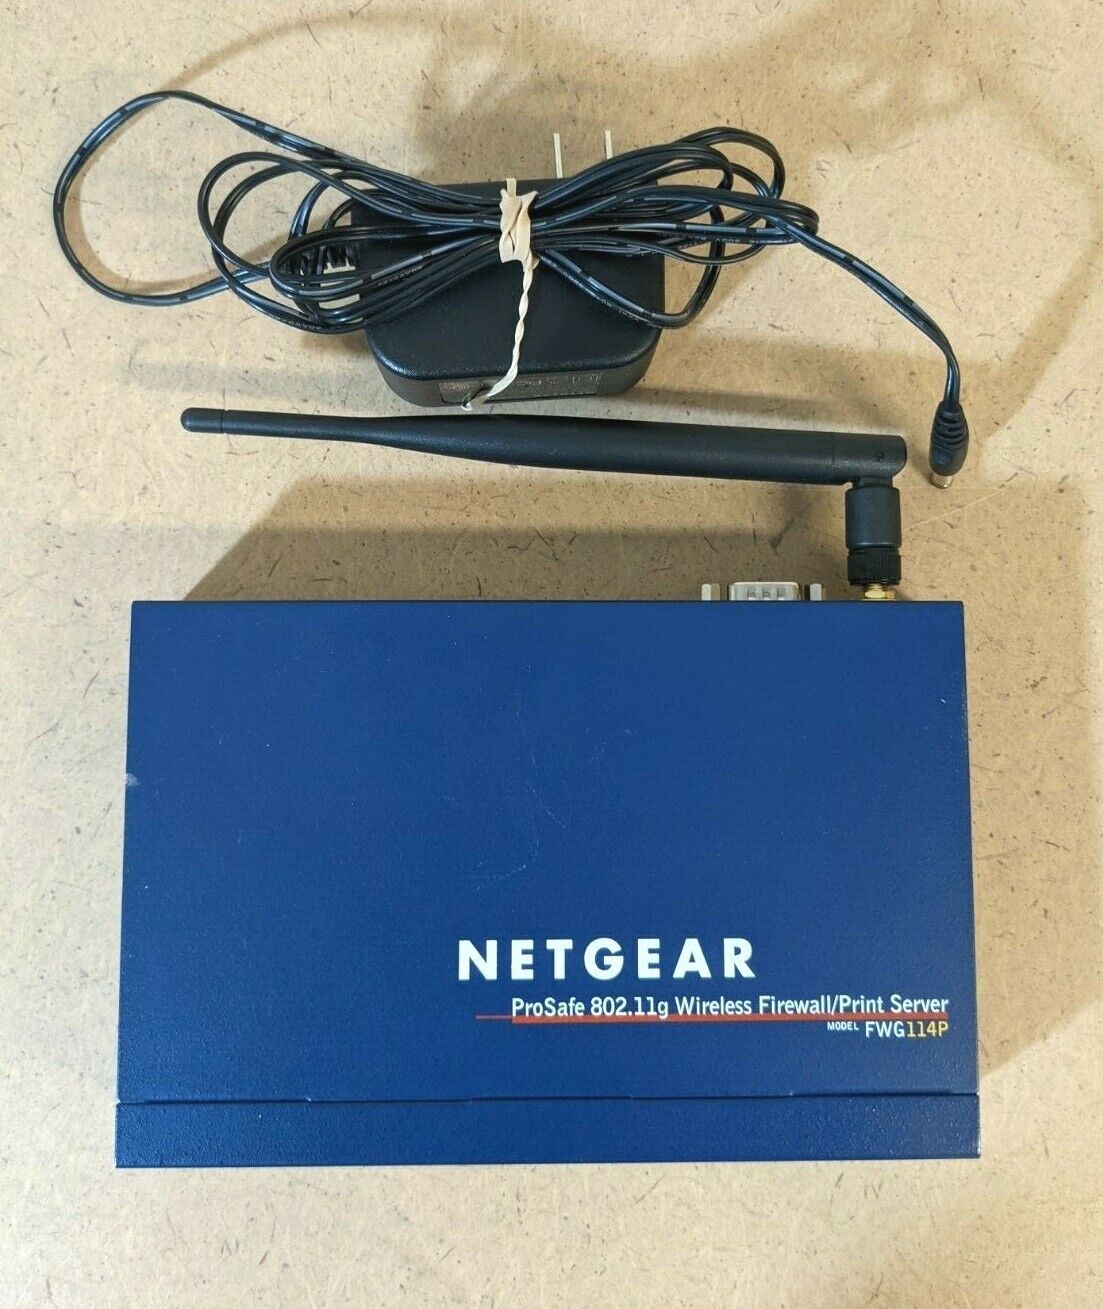 NETGEAR FWG114P ProSafe 802.11g Wireless Firewall/Print Server + Power Supply